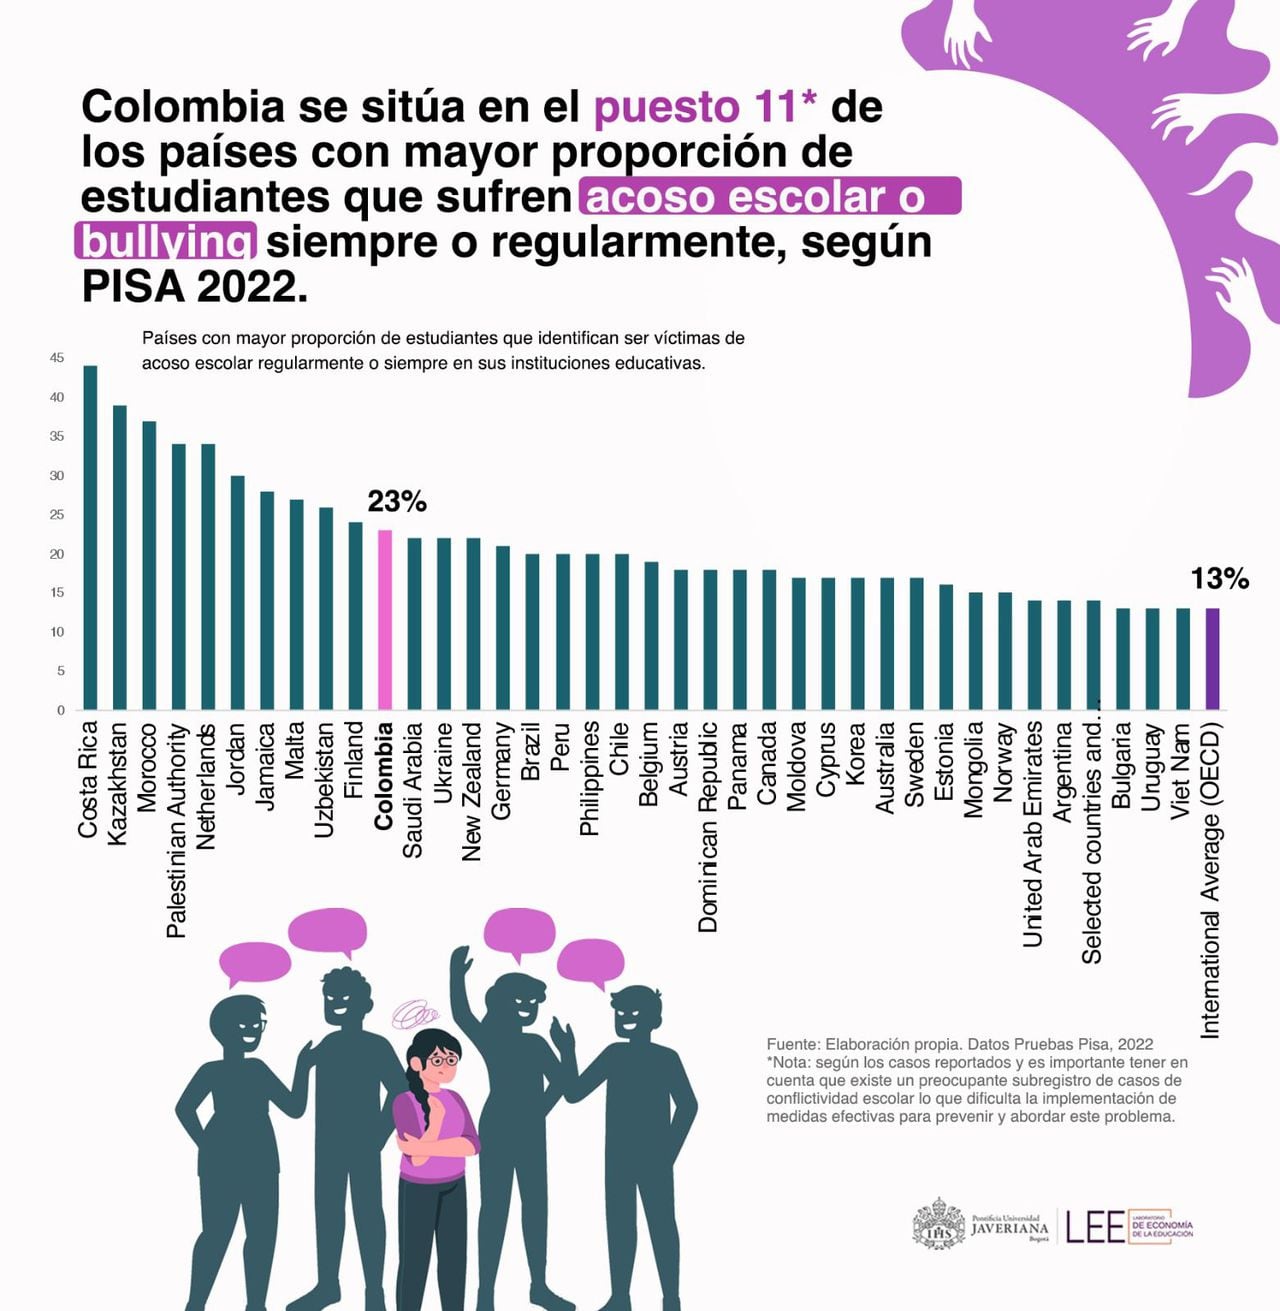 La prevalencia del acoso escolar en Colombia es relativamente alta en comparación con el promedio de los países de la OCDE, ocupando el puesto 11 entre los países con mayor proporción de estudiantes que sufren acoso regularmente o siempre.